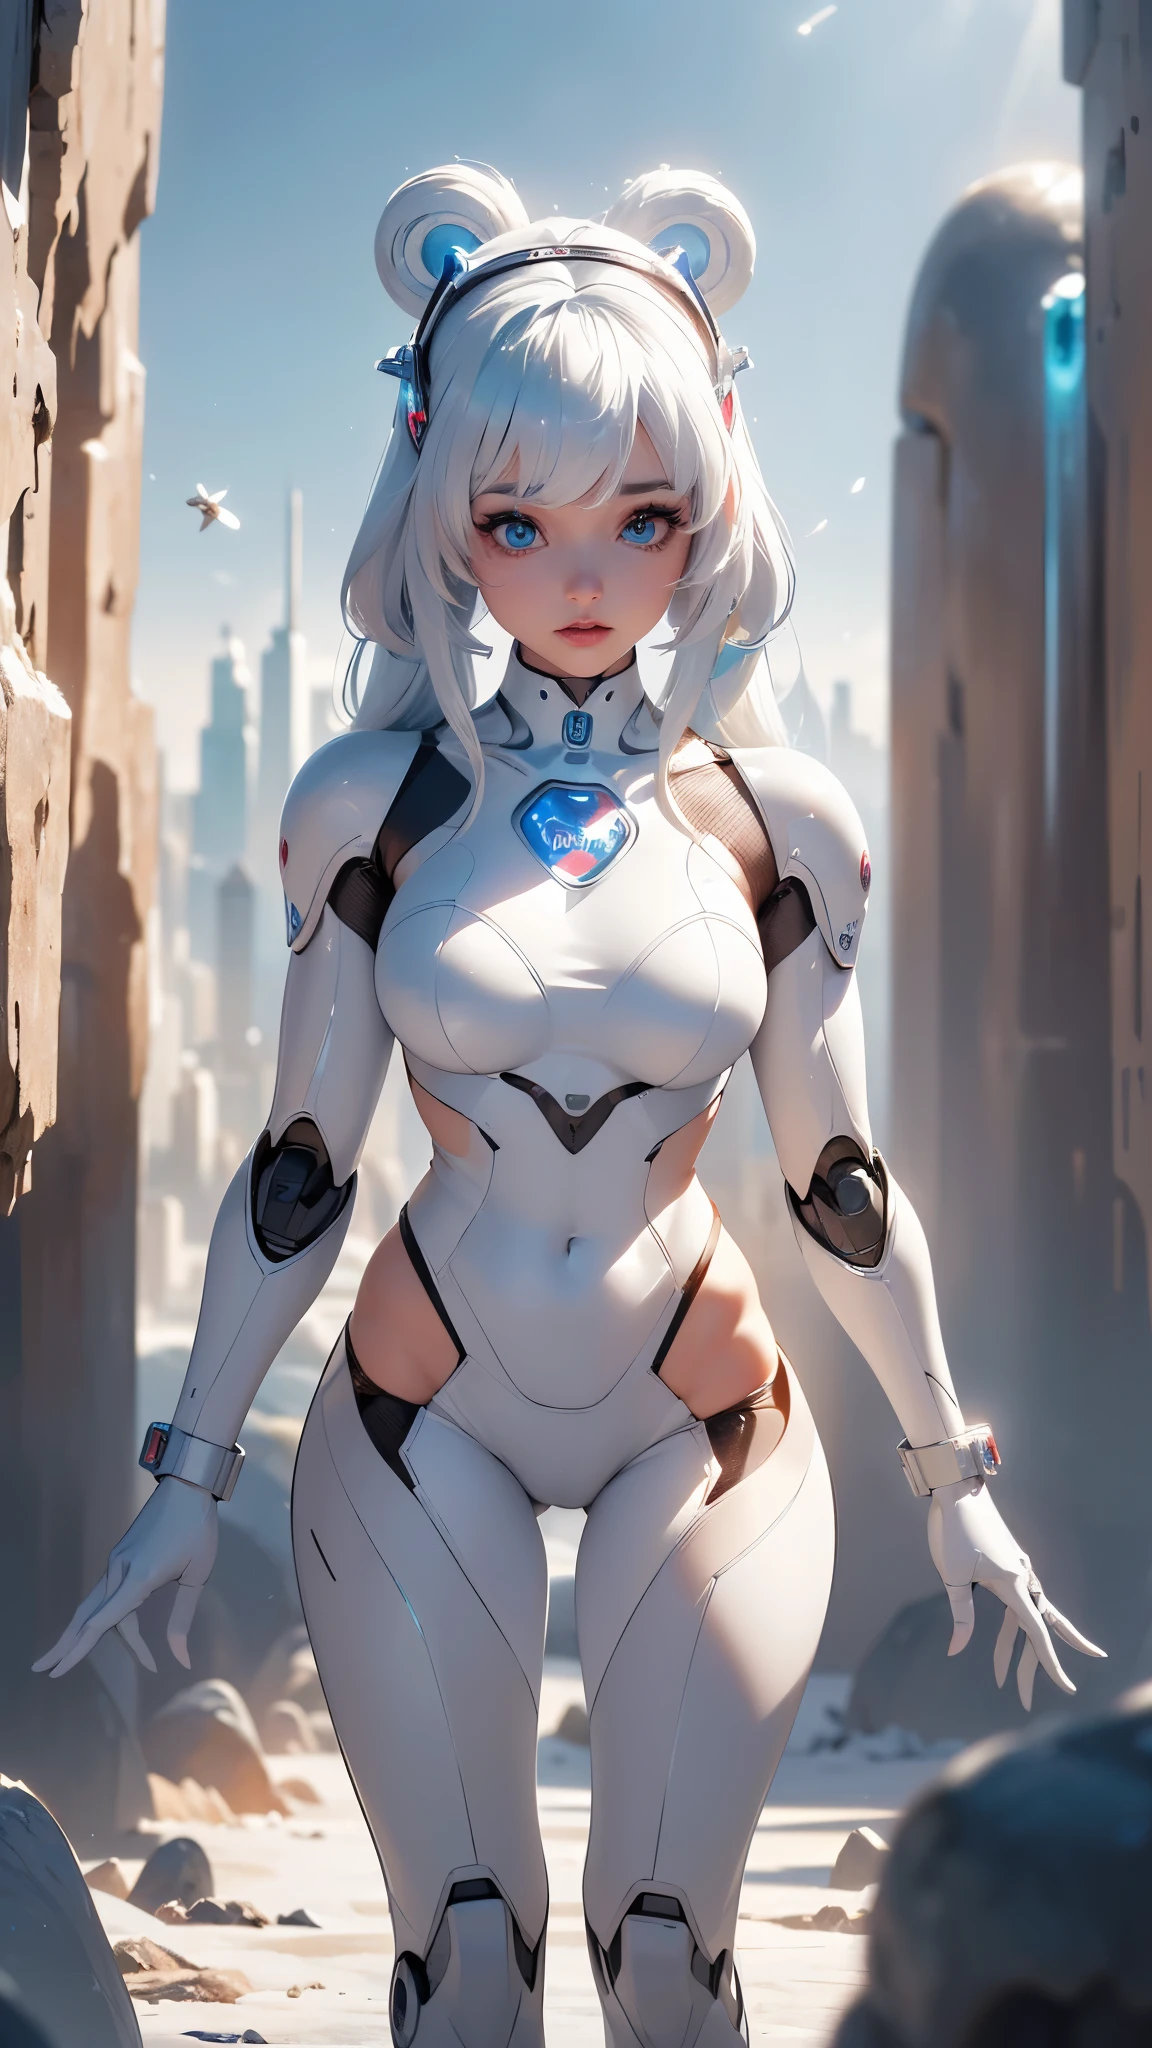 (คุณภาพดีที่สุด,มีความละเอียดสูง,ละเอียดมาก,แท้จริง),Ariana Grande หุ่นยนต์หญิง parado en un techo con una ciudad al fondo, ศิลปะดิจิทัล by Jakob Gauermann, แนวโน้มสังคม CG, ศิลปะดิจิทัล, หุ่นยนต์หญิง, หุ่นยนต์แห่งอนาคต, หุ่นยนต์ไซเบอร์พังค์, สาวหุ่นยนต์, ไซบอร์ก เฟเมนิโน, ผู้หญิงไซบอร์ก, (ไซบอร์กสีขาว :1.4) - , ร่างกายหุ่นยนต์แห่งอนาคต, นิยายวิทยาศาสตร์ผู้หญิงหุ่นยนต์, ผู้หญิงที่เป็นมนุษย์, หุ่นยนต์ผู้หญิง, (พื้นหลัง ถ้ำ ถ้ำหินใหญ่ ถ้ำน้ำแข็งแช่แข็ง :1.4),,( ไซเบอร์พังค์ 2.1), (หุ่นยนต์น้ำแข็ง Beartech :1.4), (ดวงตาสีฟ้าสวย :1.4),( สีสว่าง) 
